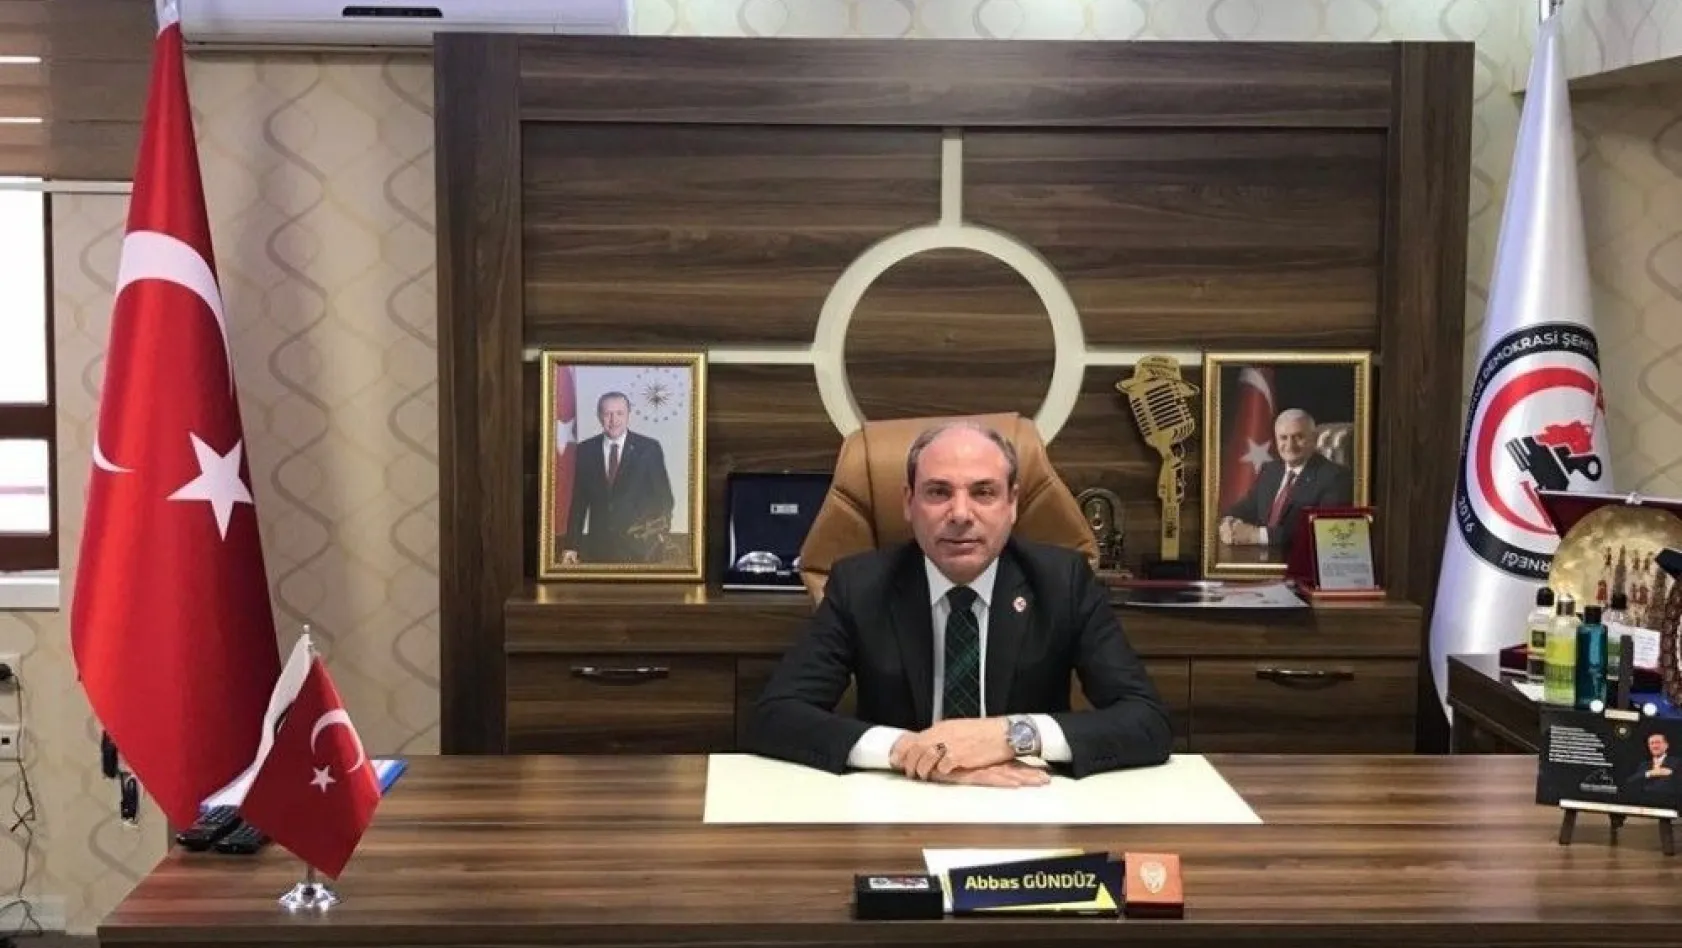 15 Temmuz Derneği Başkanı Gündüz'den Mehmetçiğe destek çağrısı
